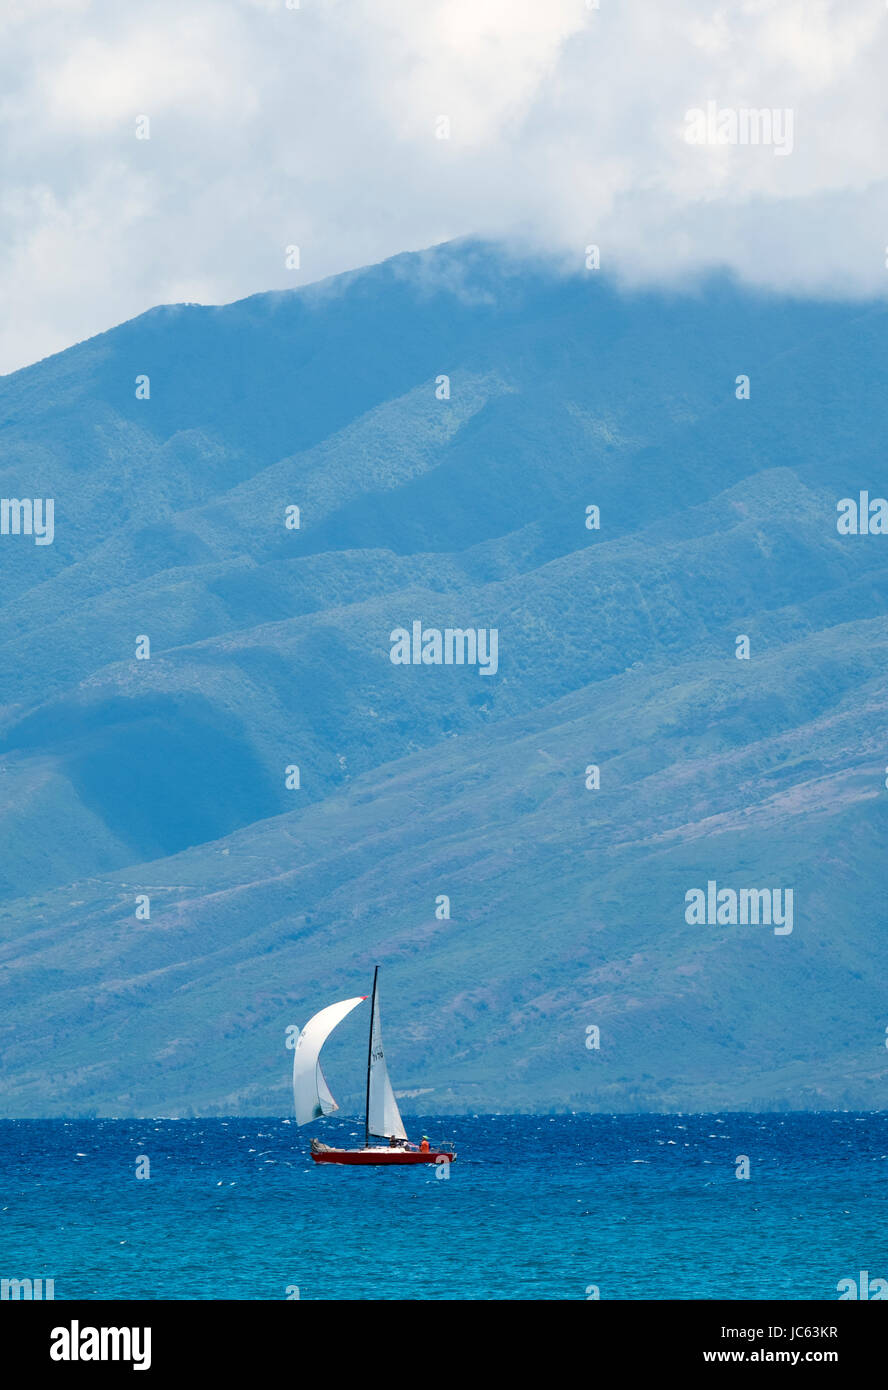 Small sailing vessel if full sail off the coast of Maui, Hawaii, USA Stock Photo